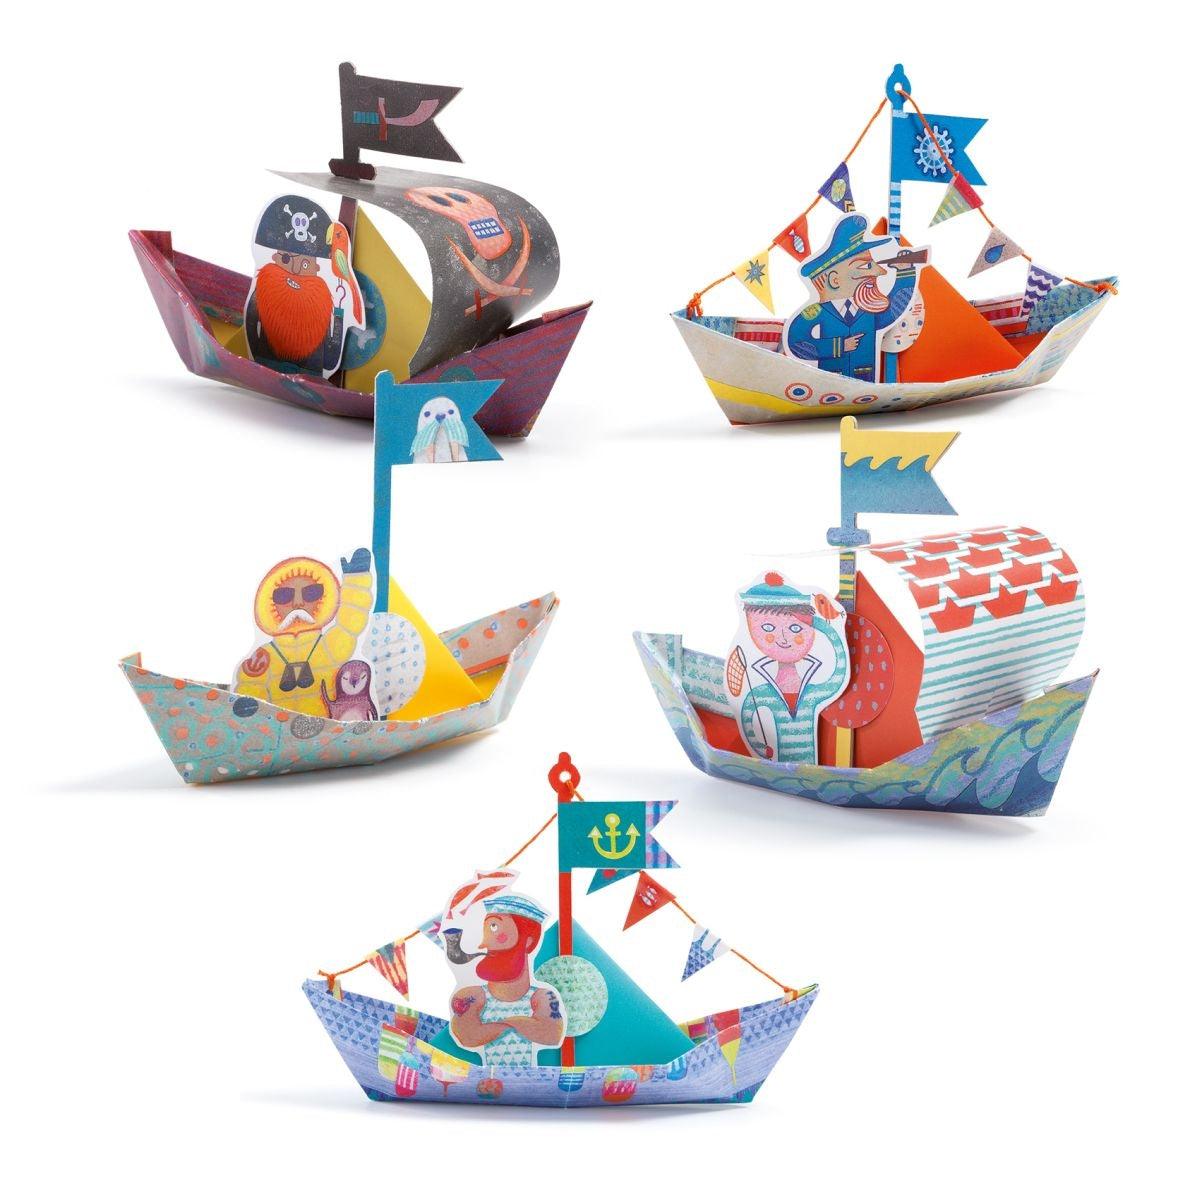 Origami Schiffe auf dem Wasser - www. kunstundspiel .de 08779